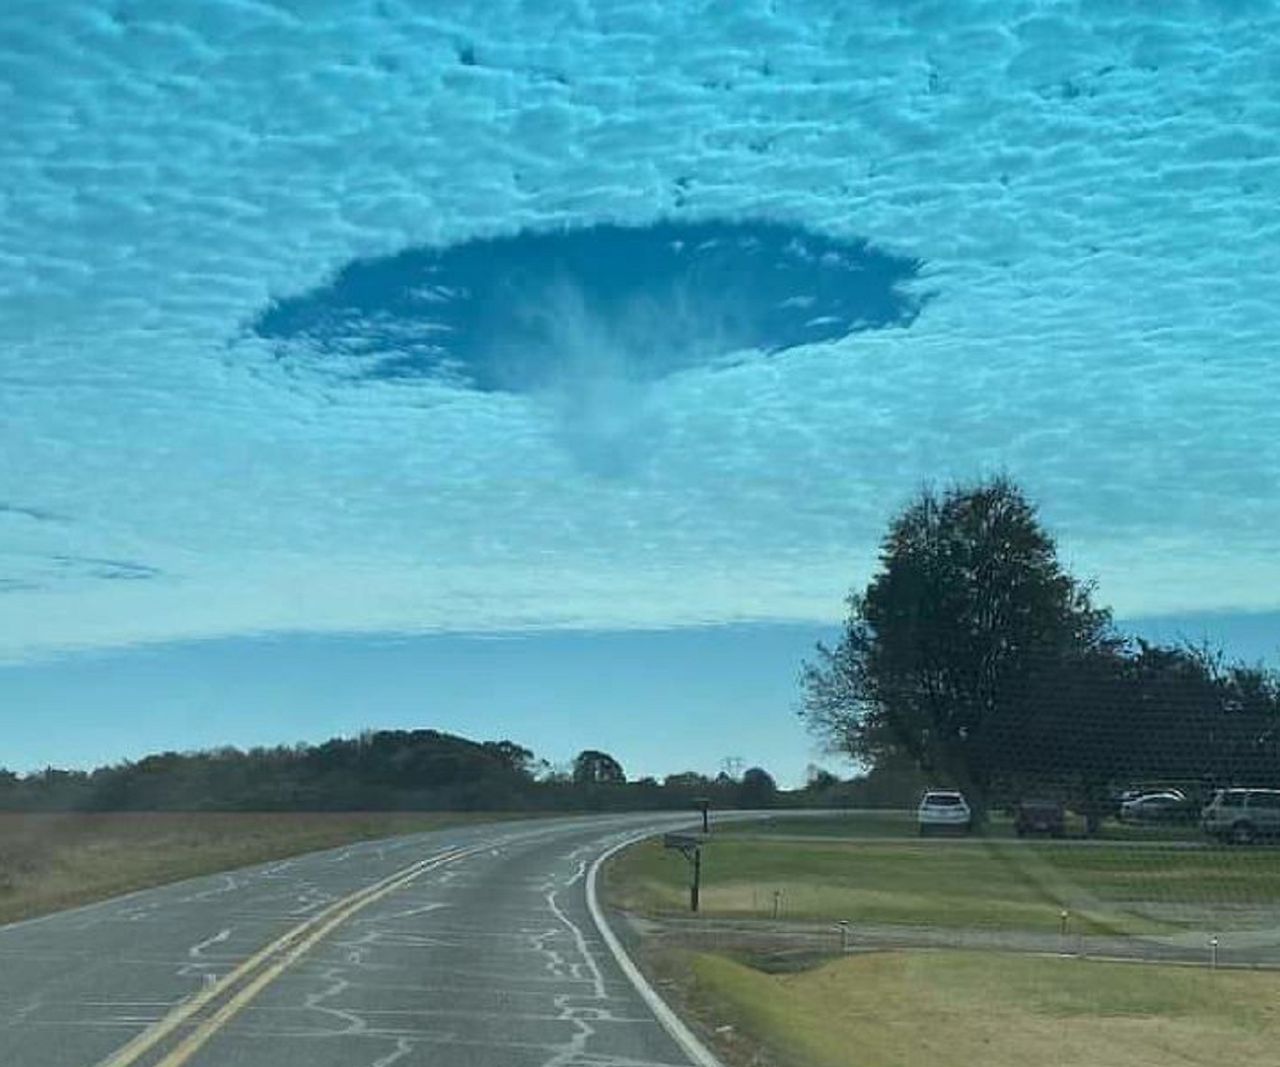 "UFO wylądowało" - komentowali internauci. Dziwna dziura w chmurach wywołała niepokój w USA